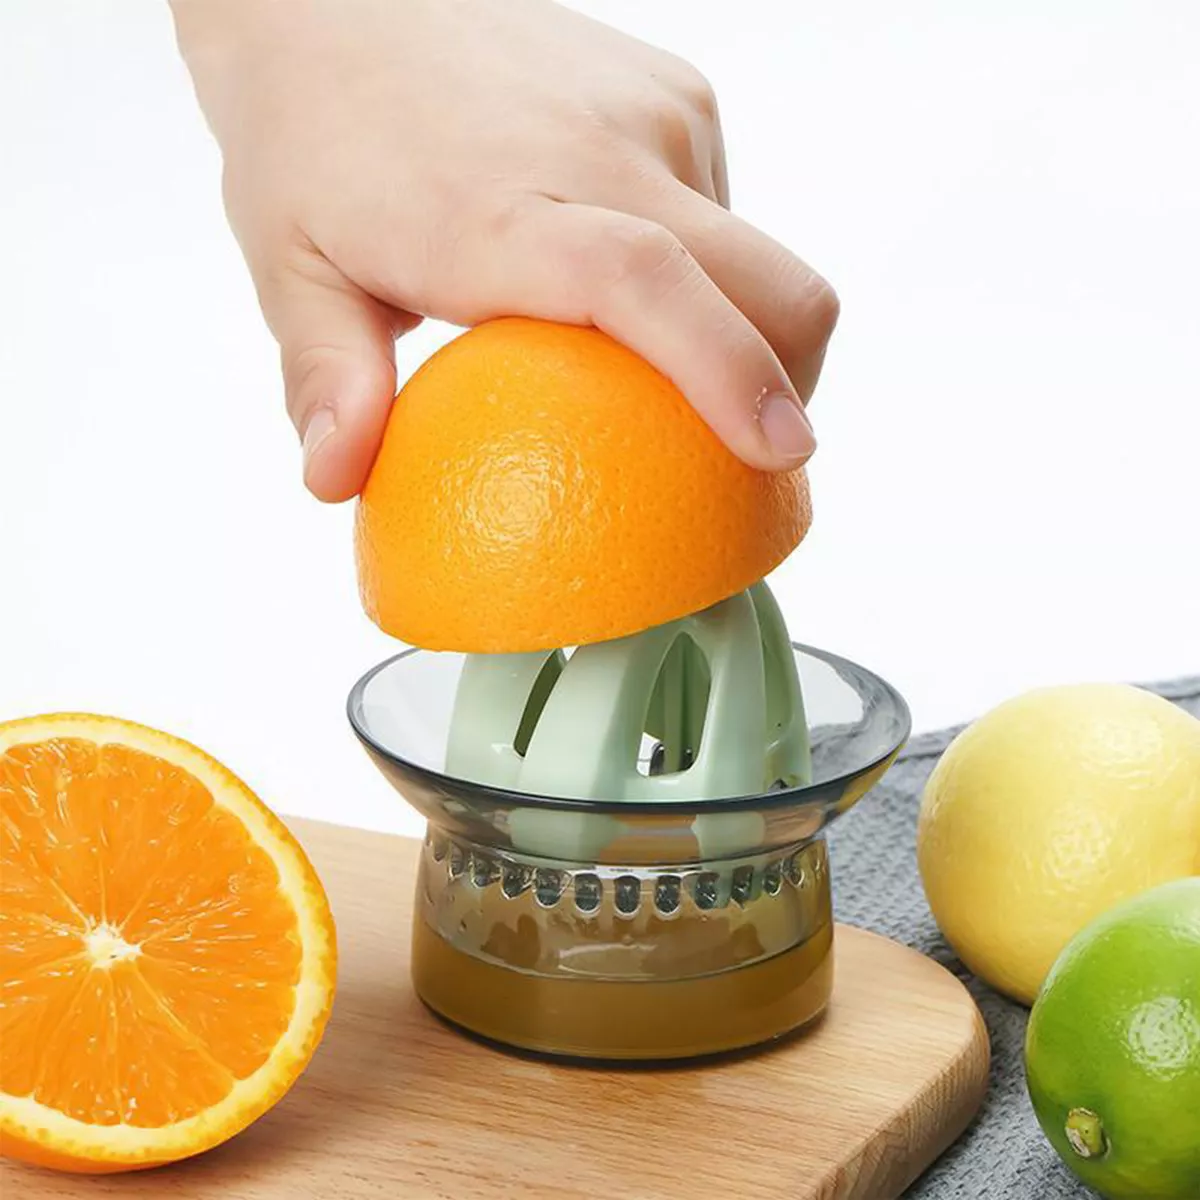 Tercera imagen para búsqueda de exprimidor de naranjas manual